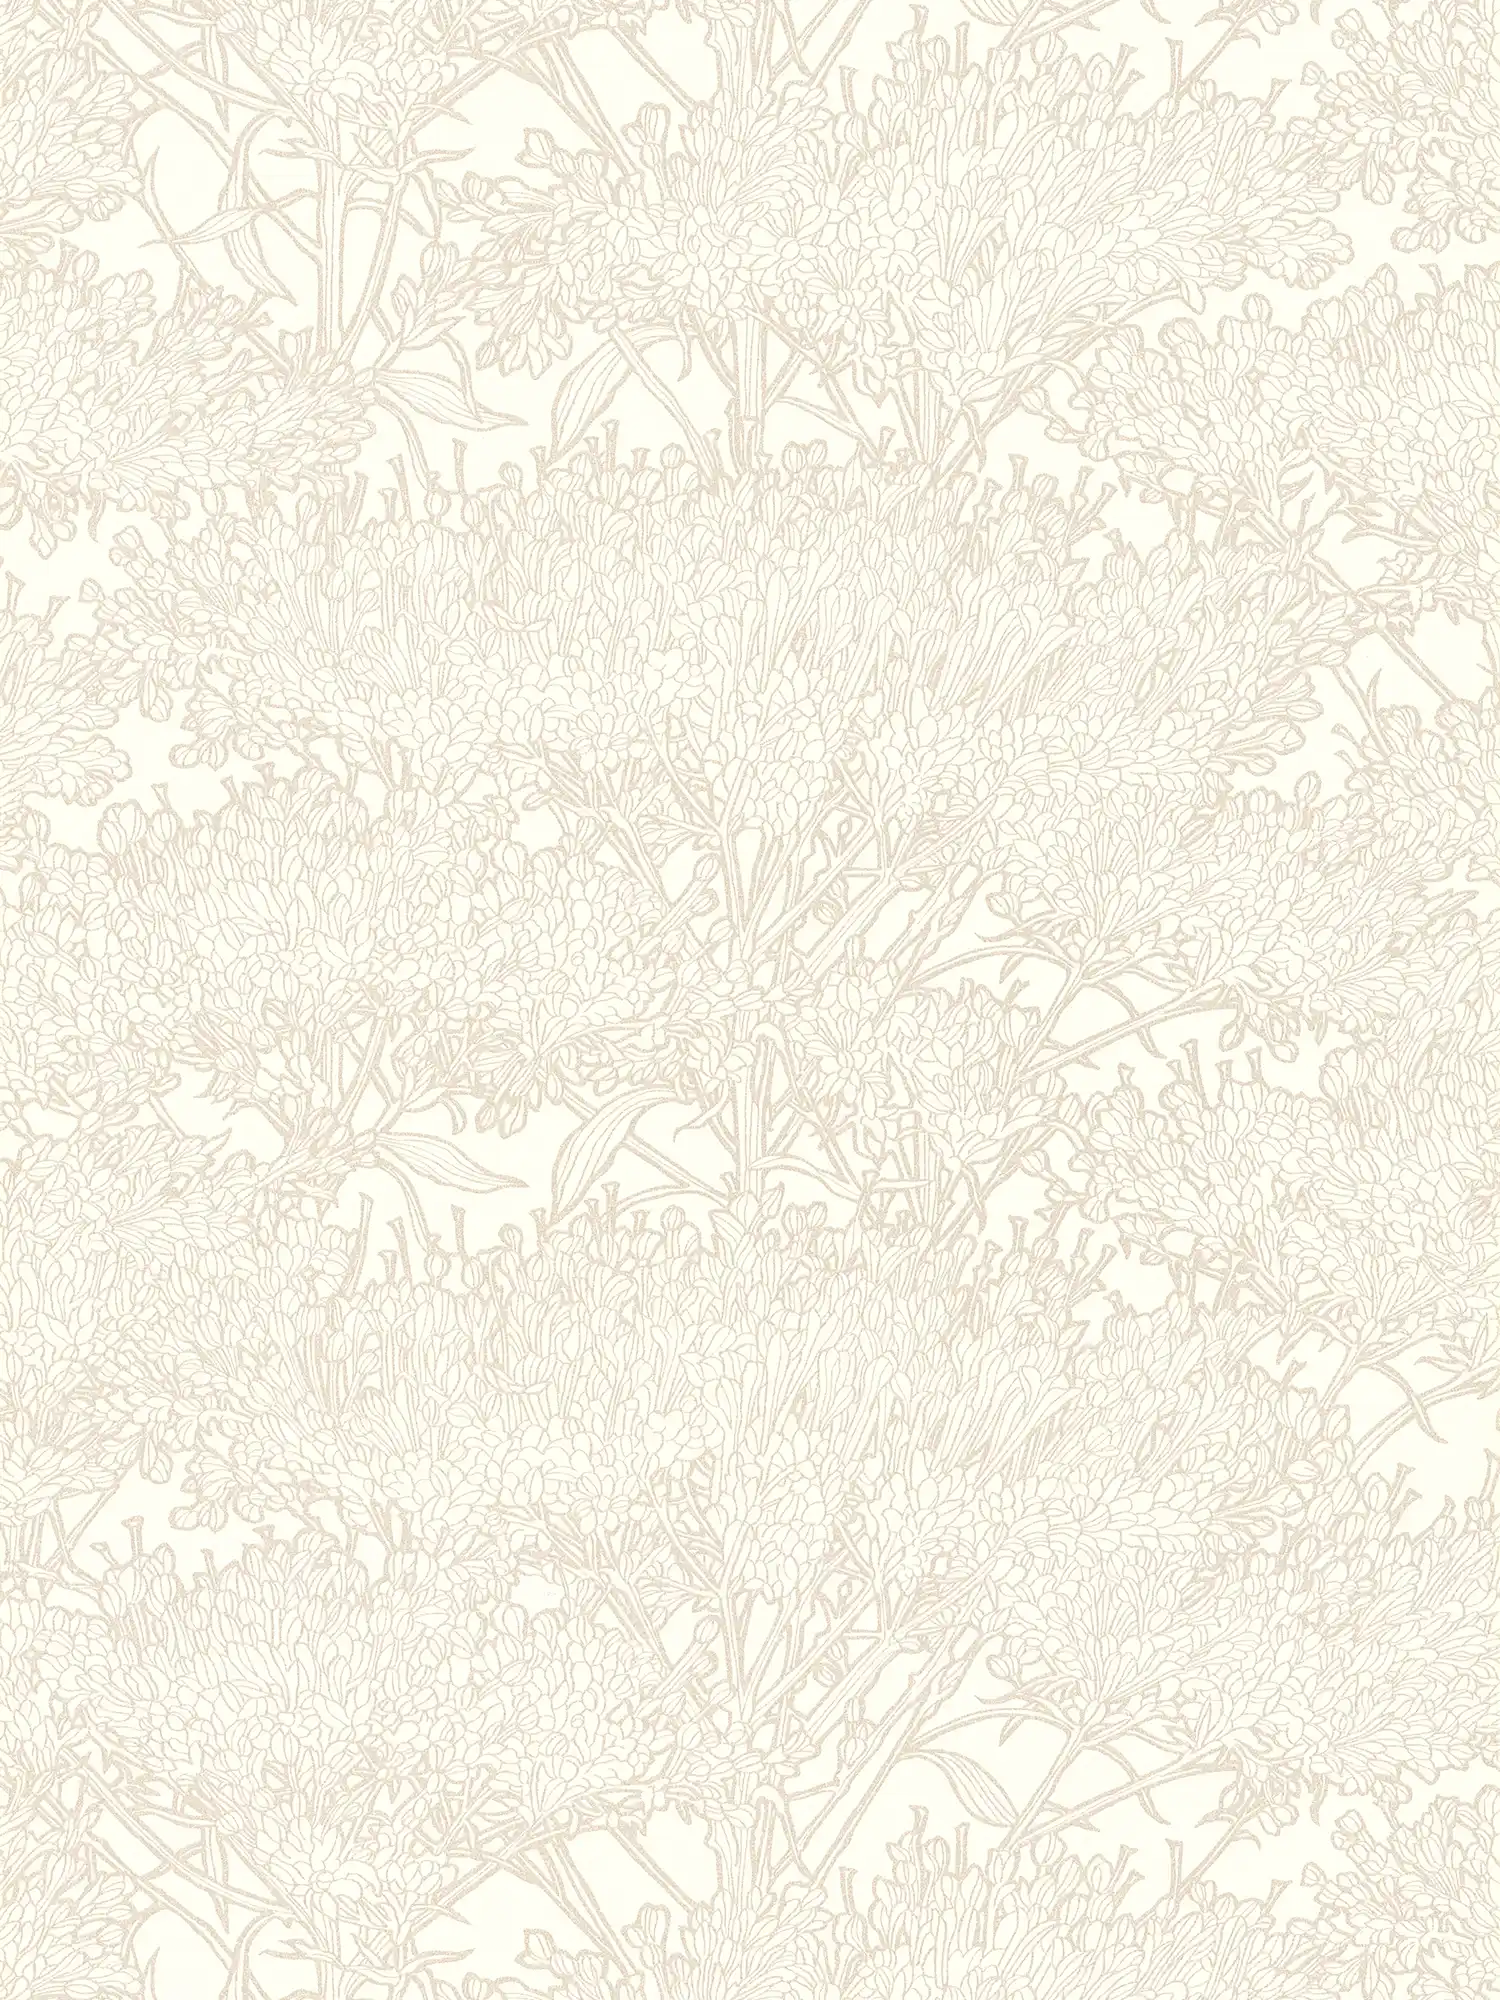 Papier peint motif floral avec contours dorés - crème, or, gris
